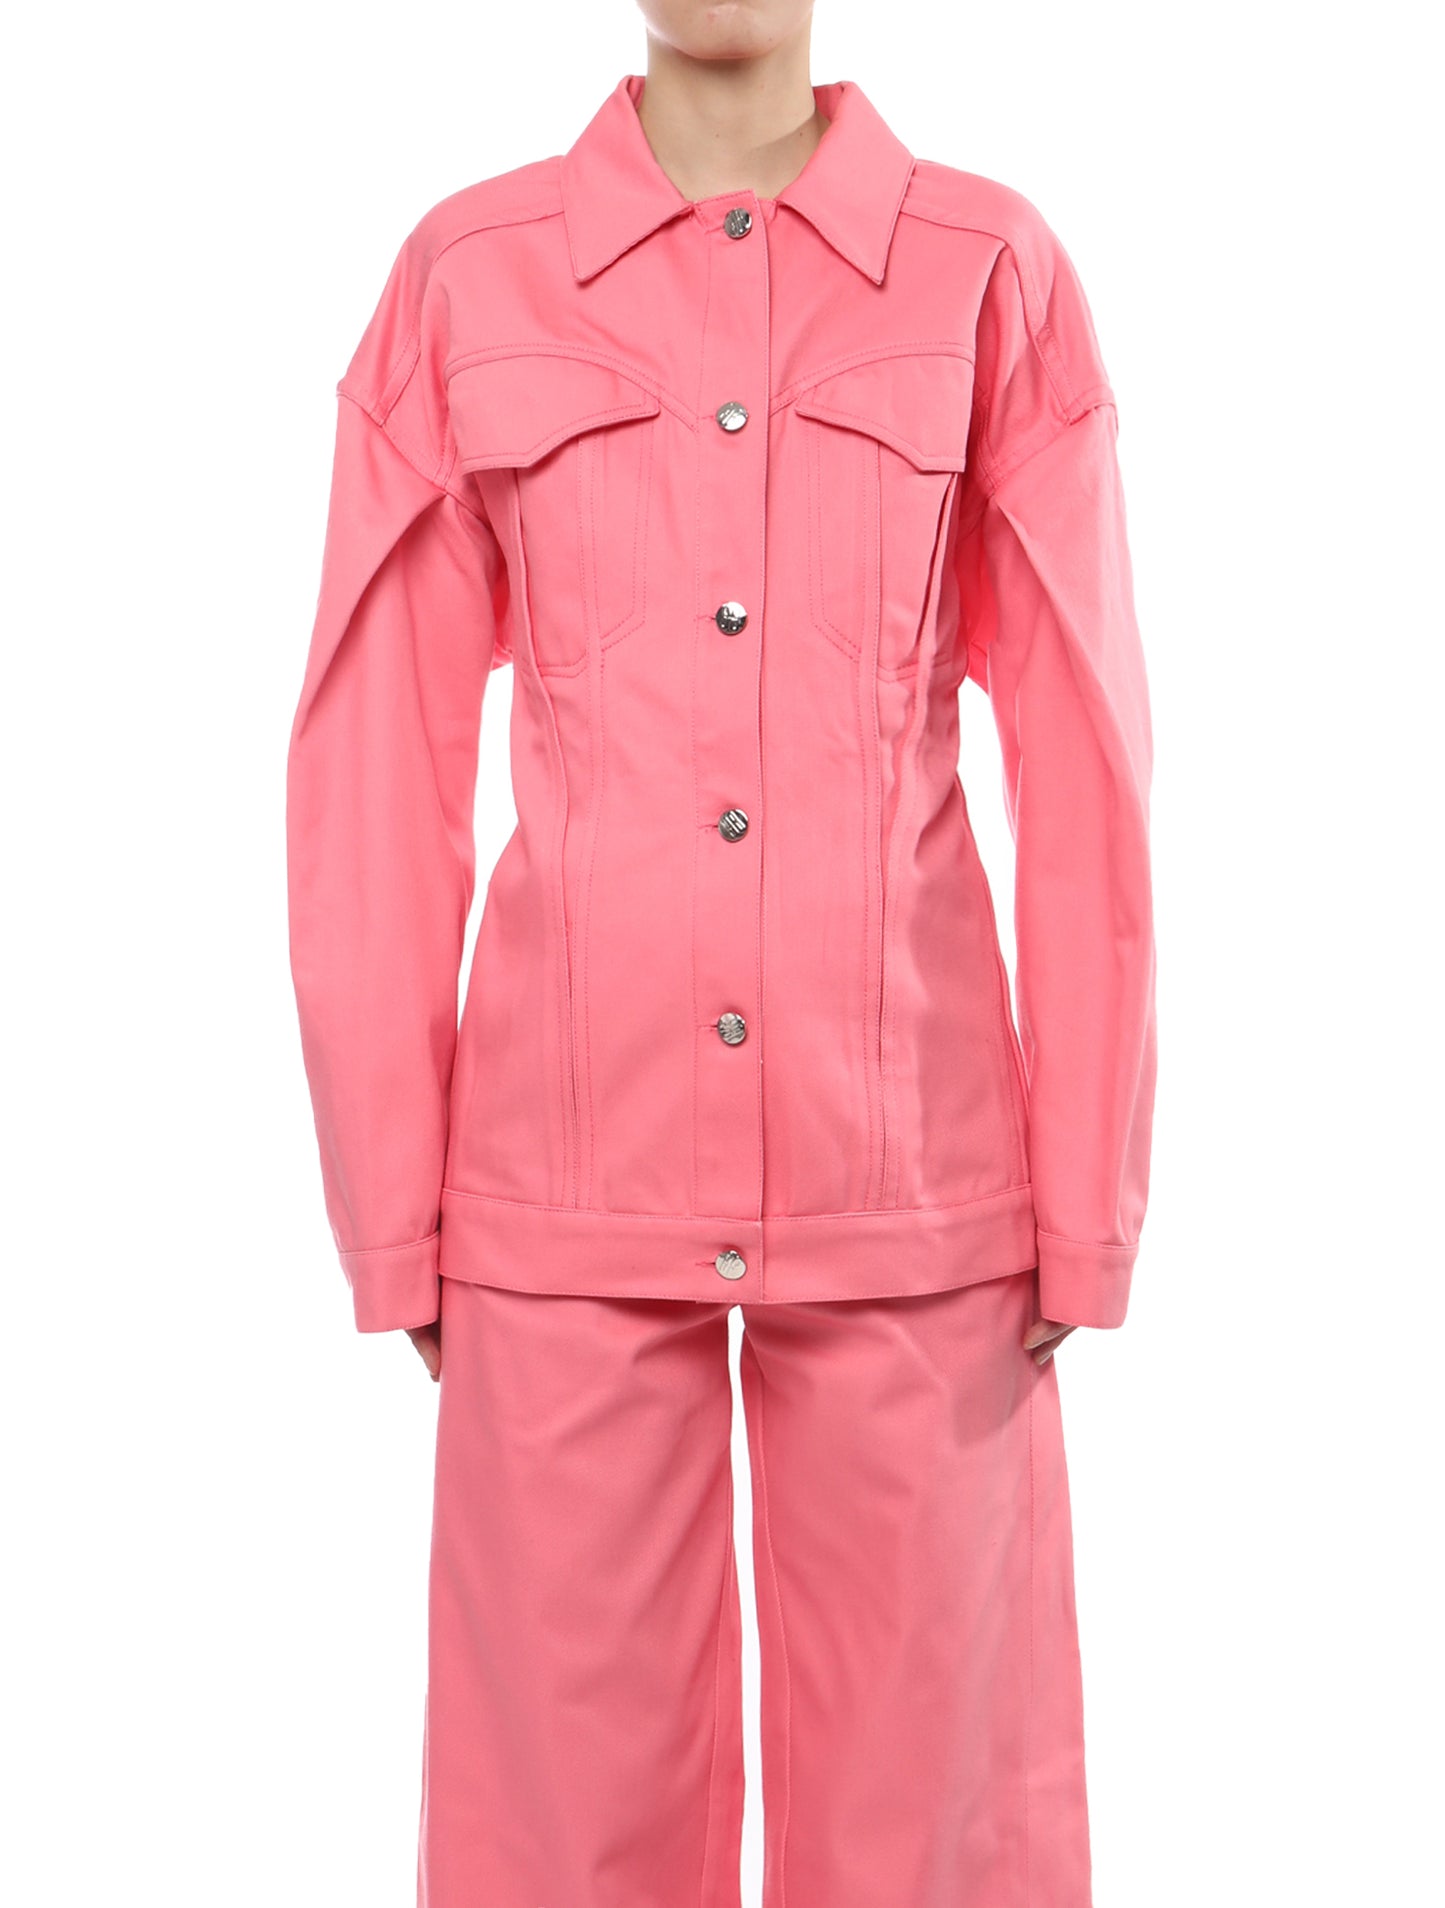 Maitrepierre Duchesse Pink Jacket